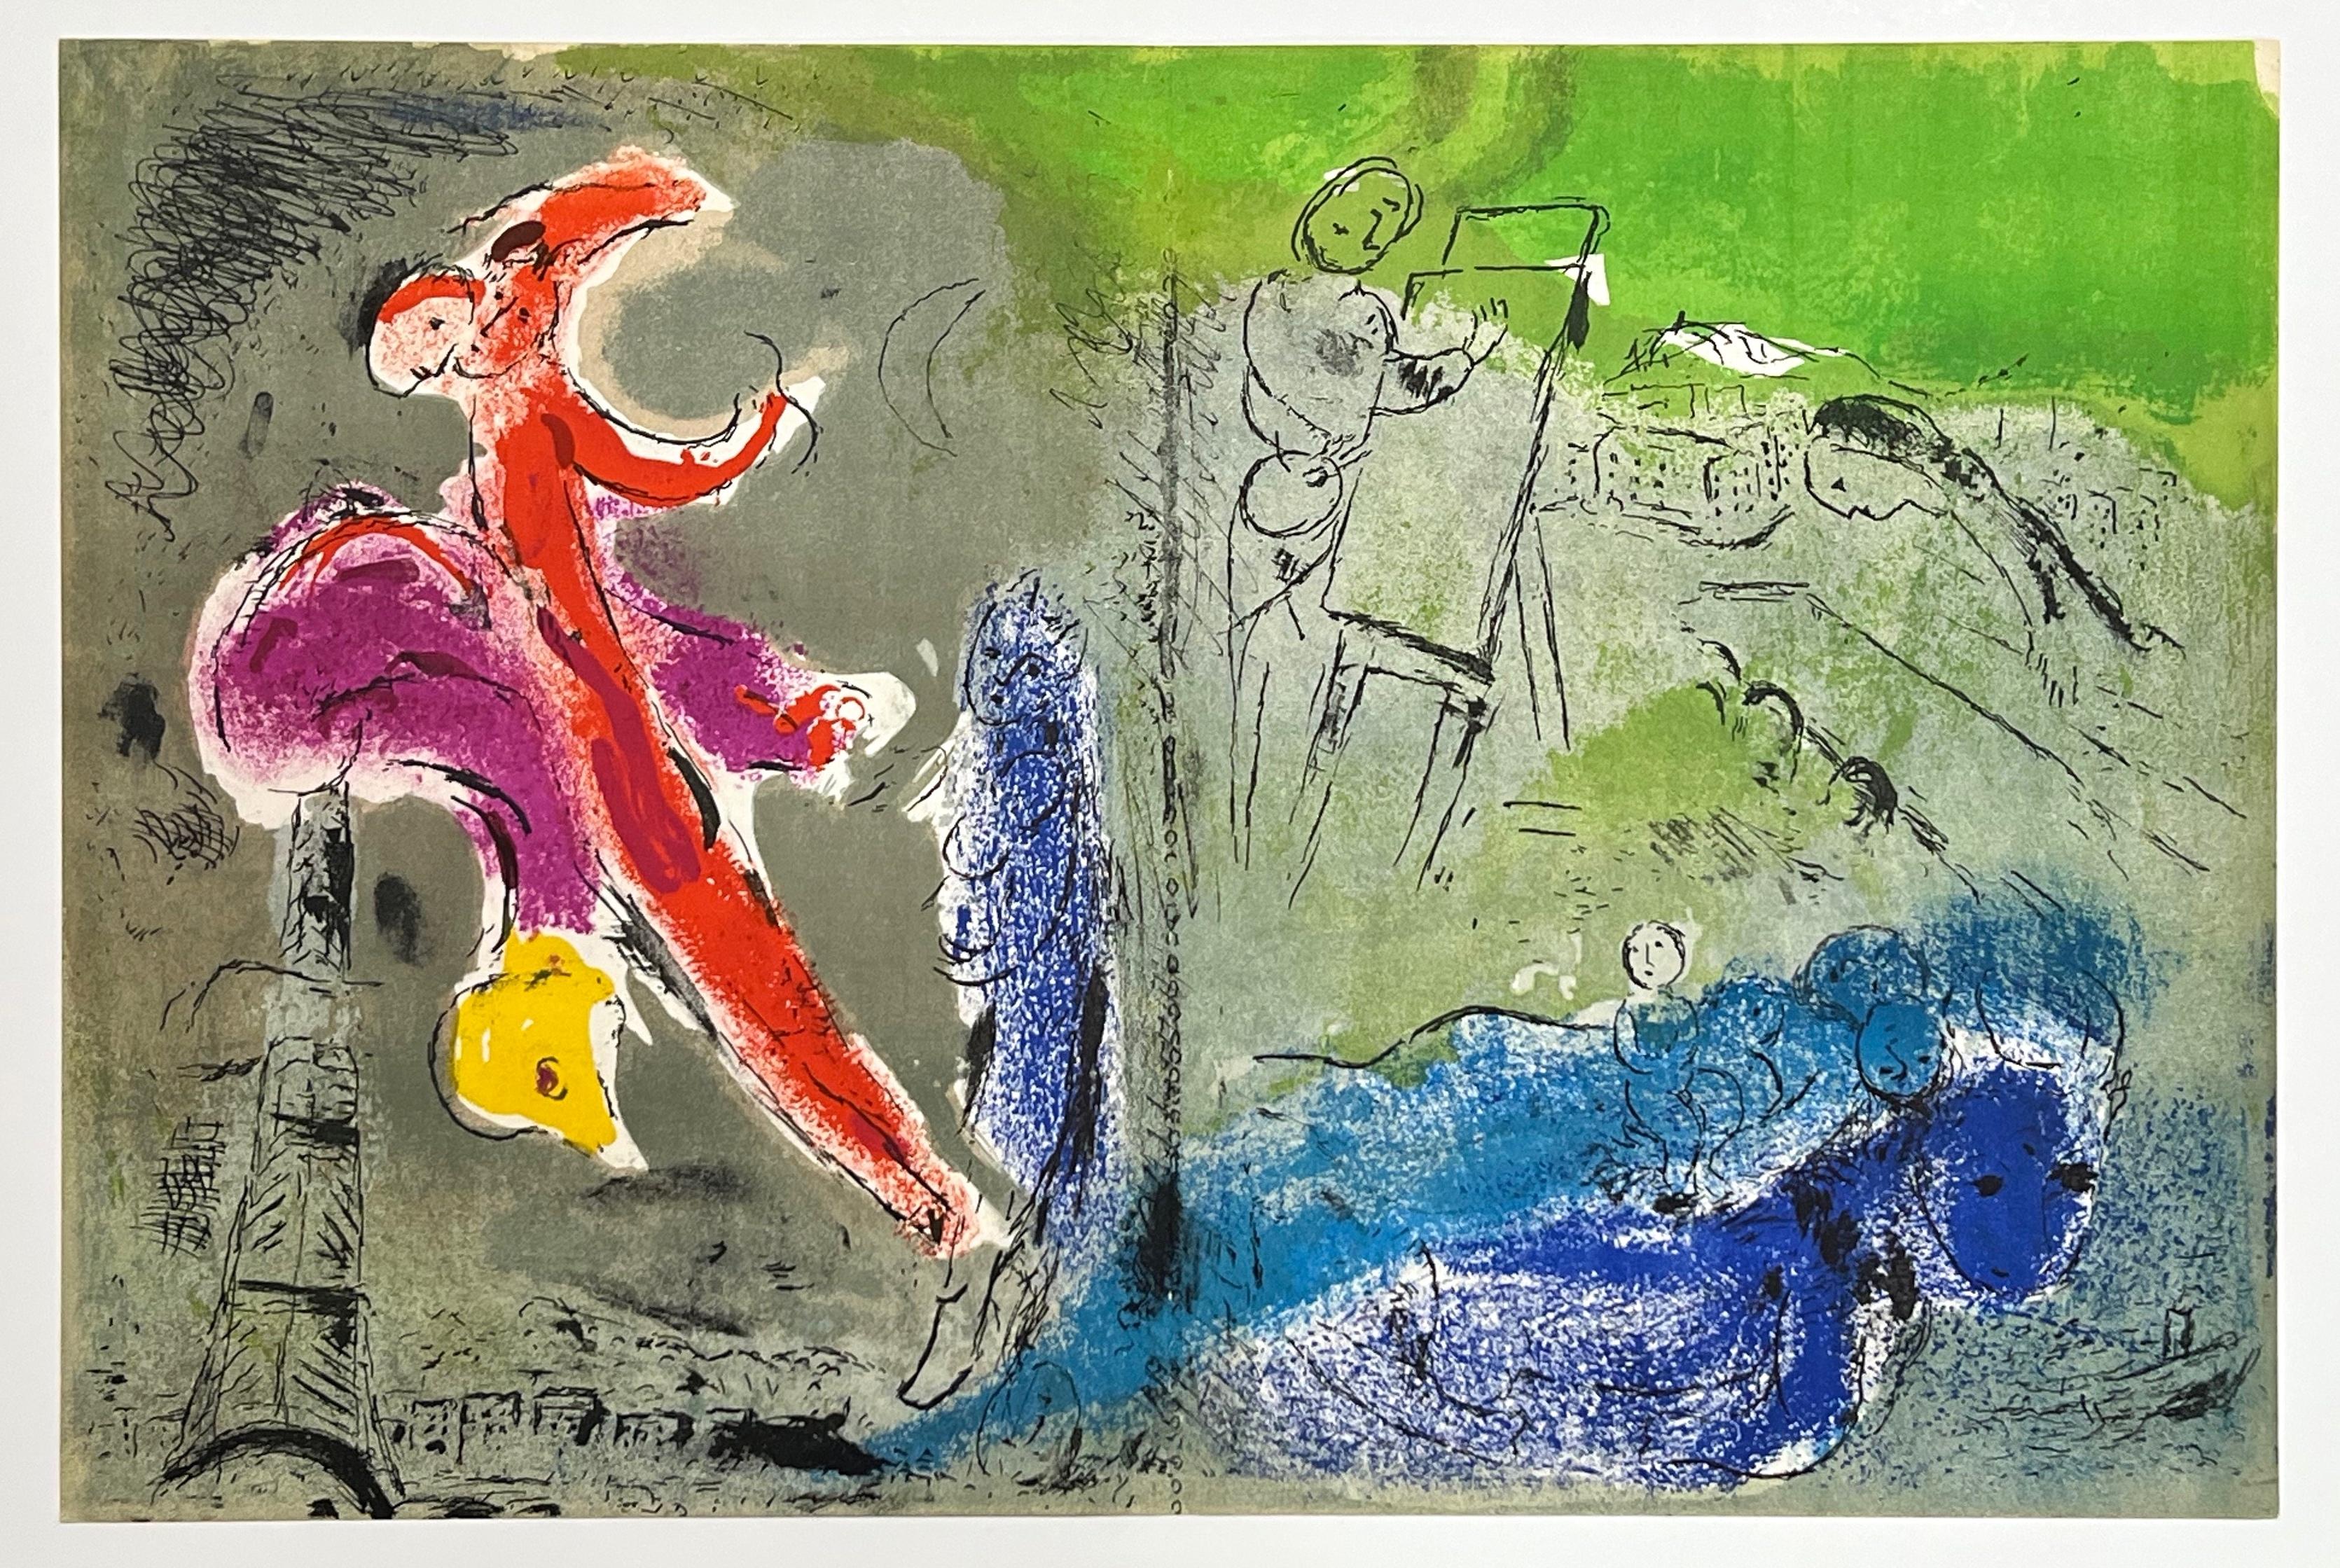 Marc Chagall Portrait Print - "Vision of Paris" original lithograph